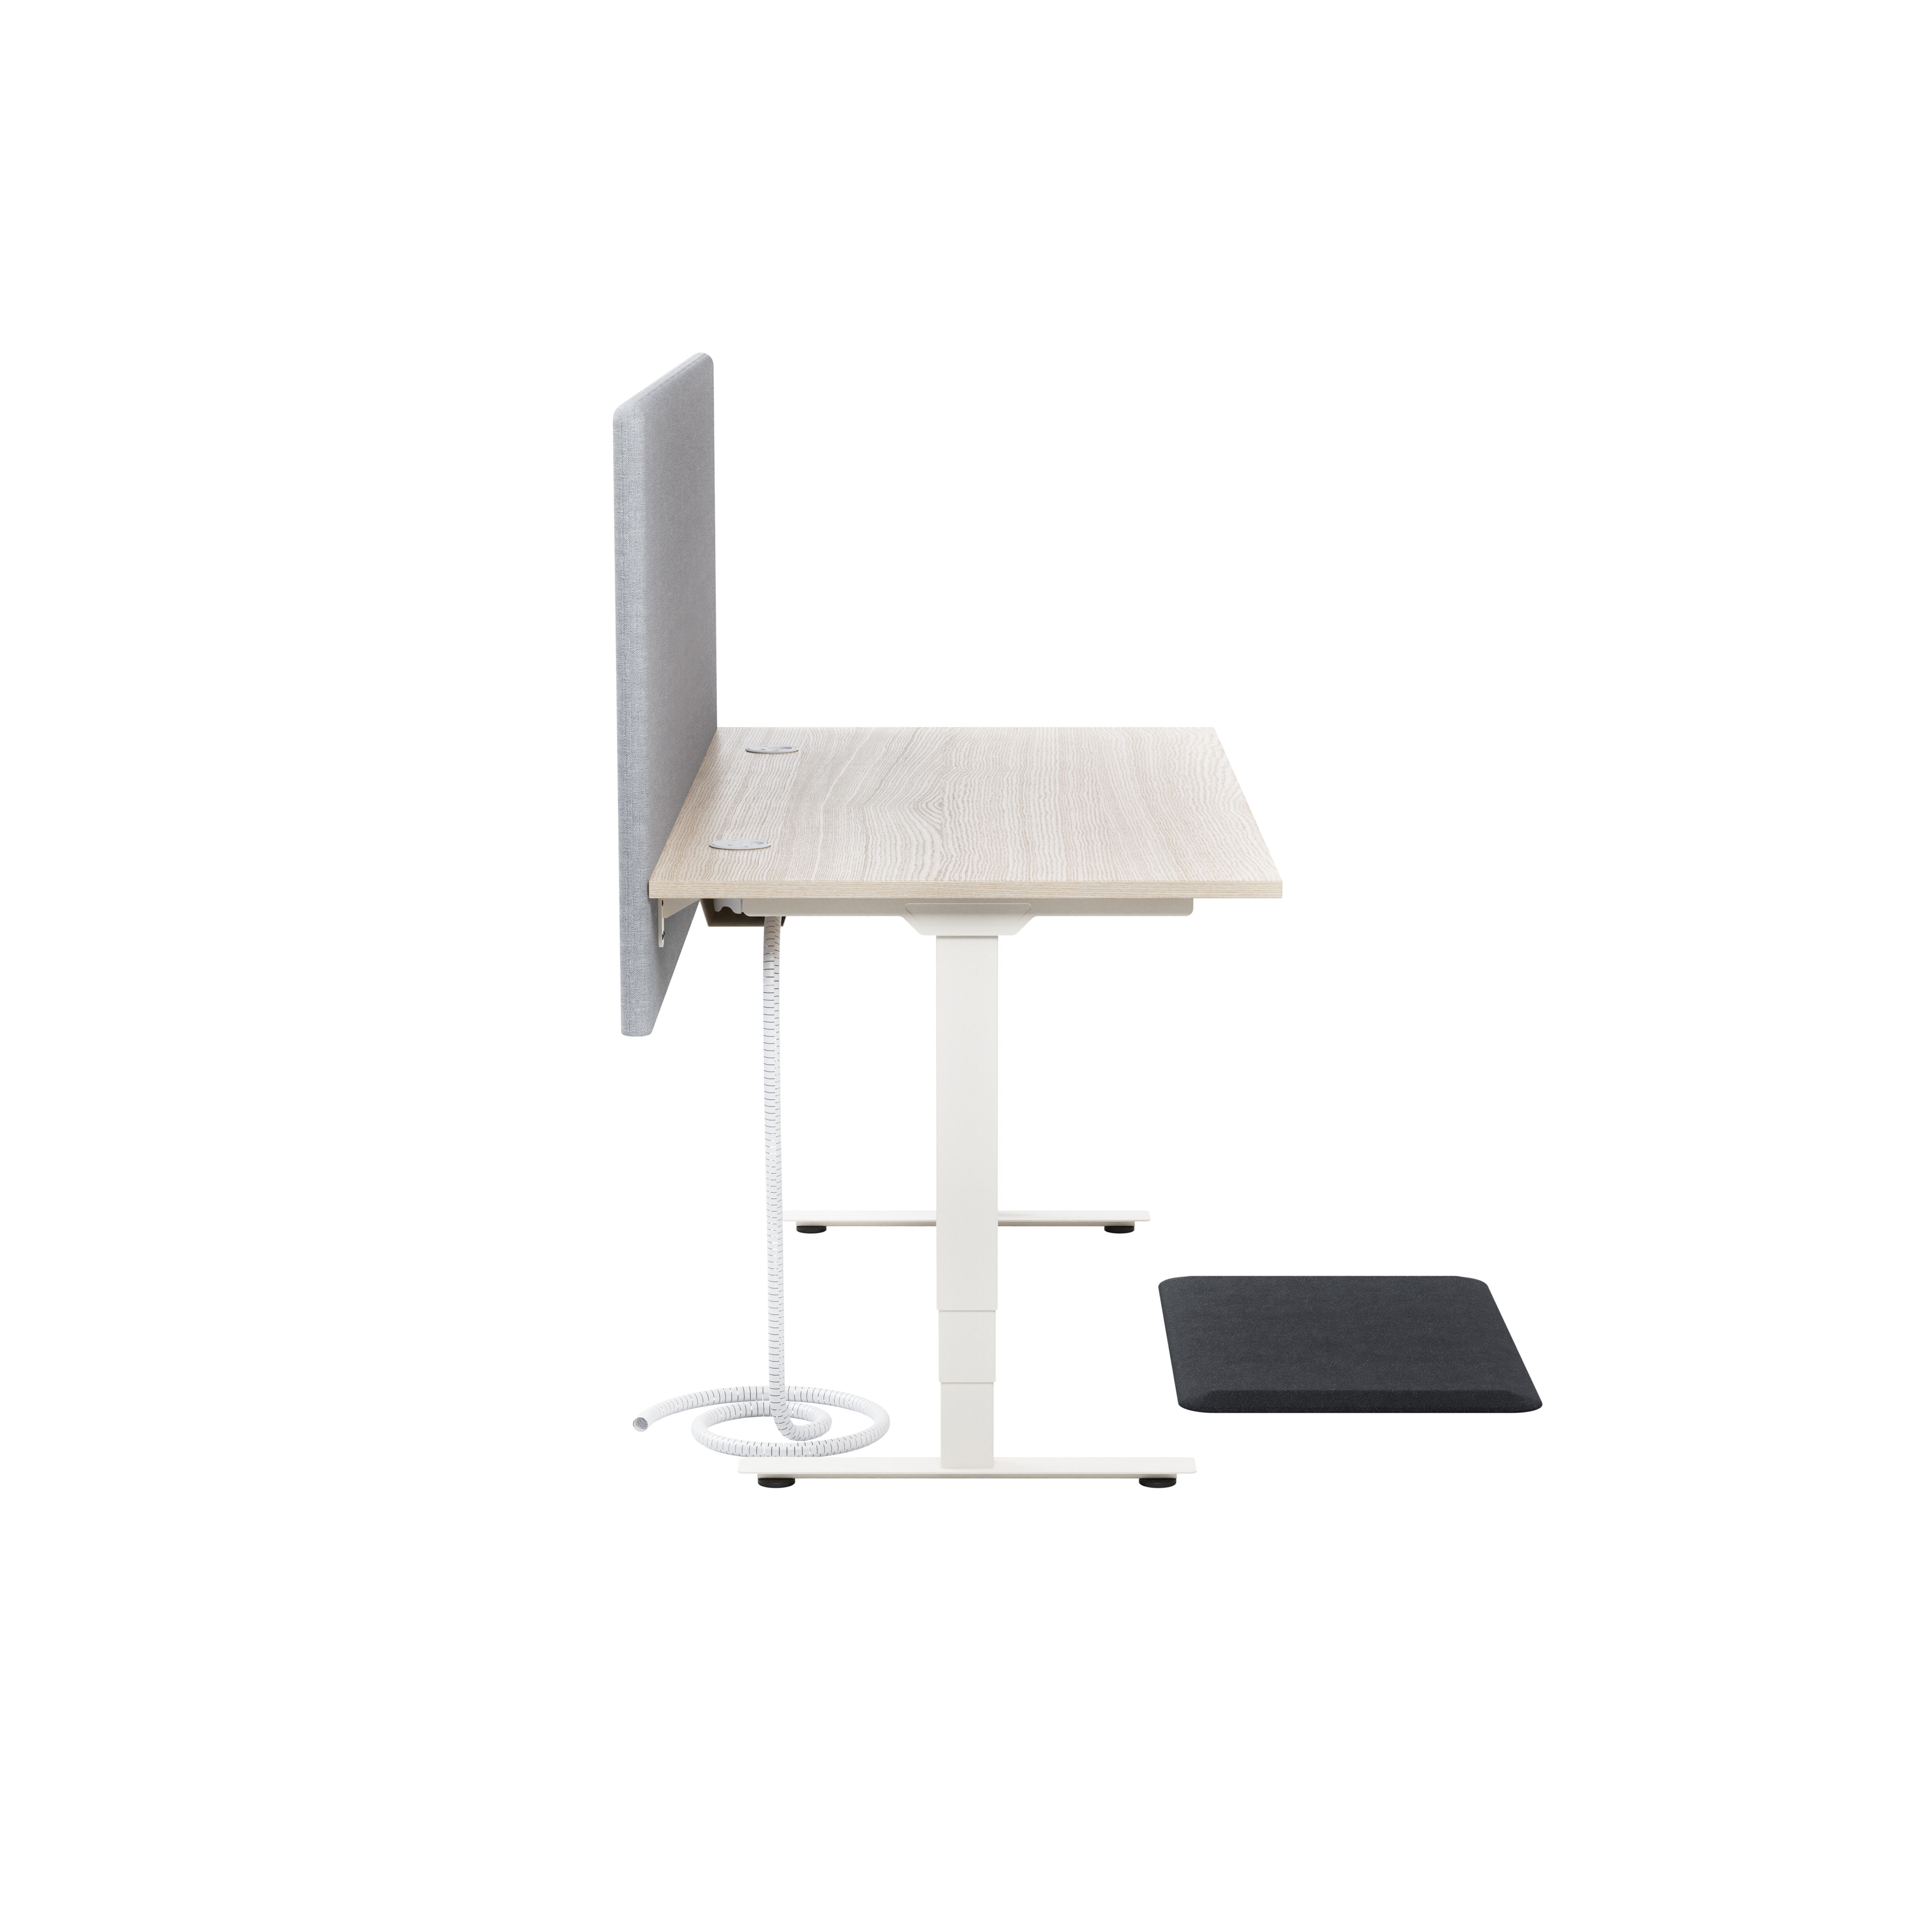 Izi Pro S Desk, sit/stand product image 3